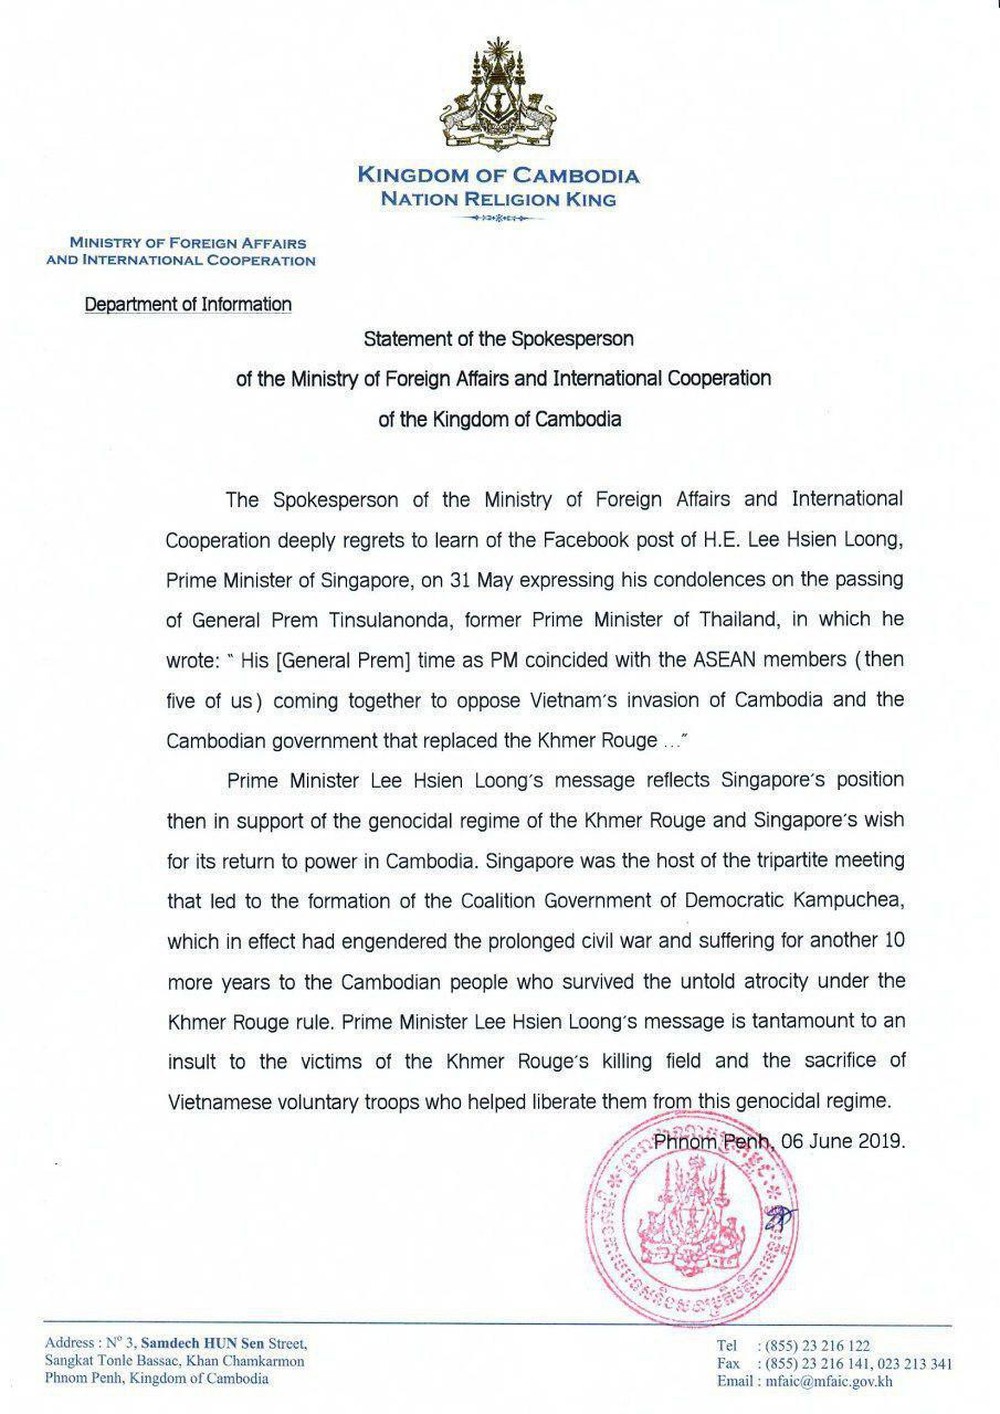 Toàn văn tuyên bố của BNG Campuchia: Phát biểu của ông Lý Hiển Long gợi lại thời kỳ Singapore ủng hộ Khmer Đỏ - Ảnh 1.